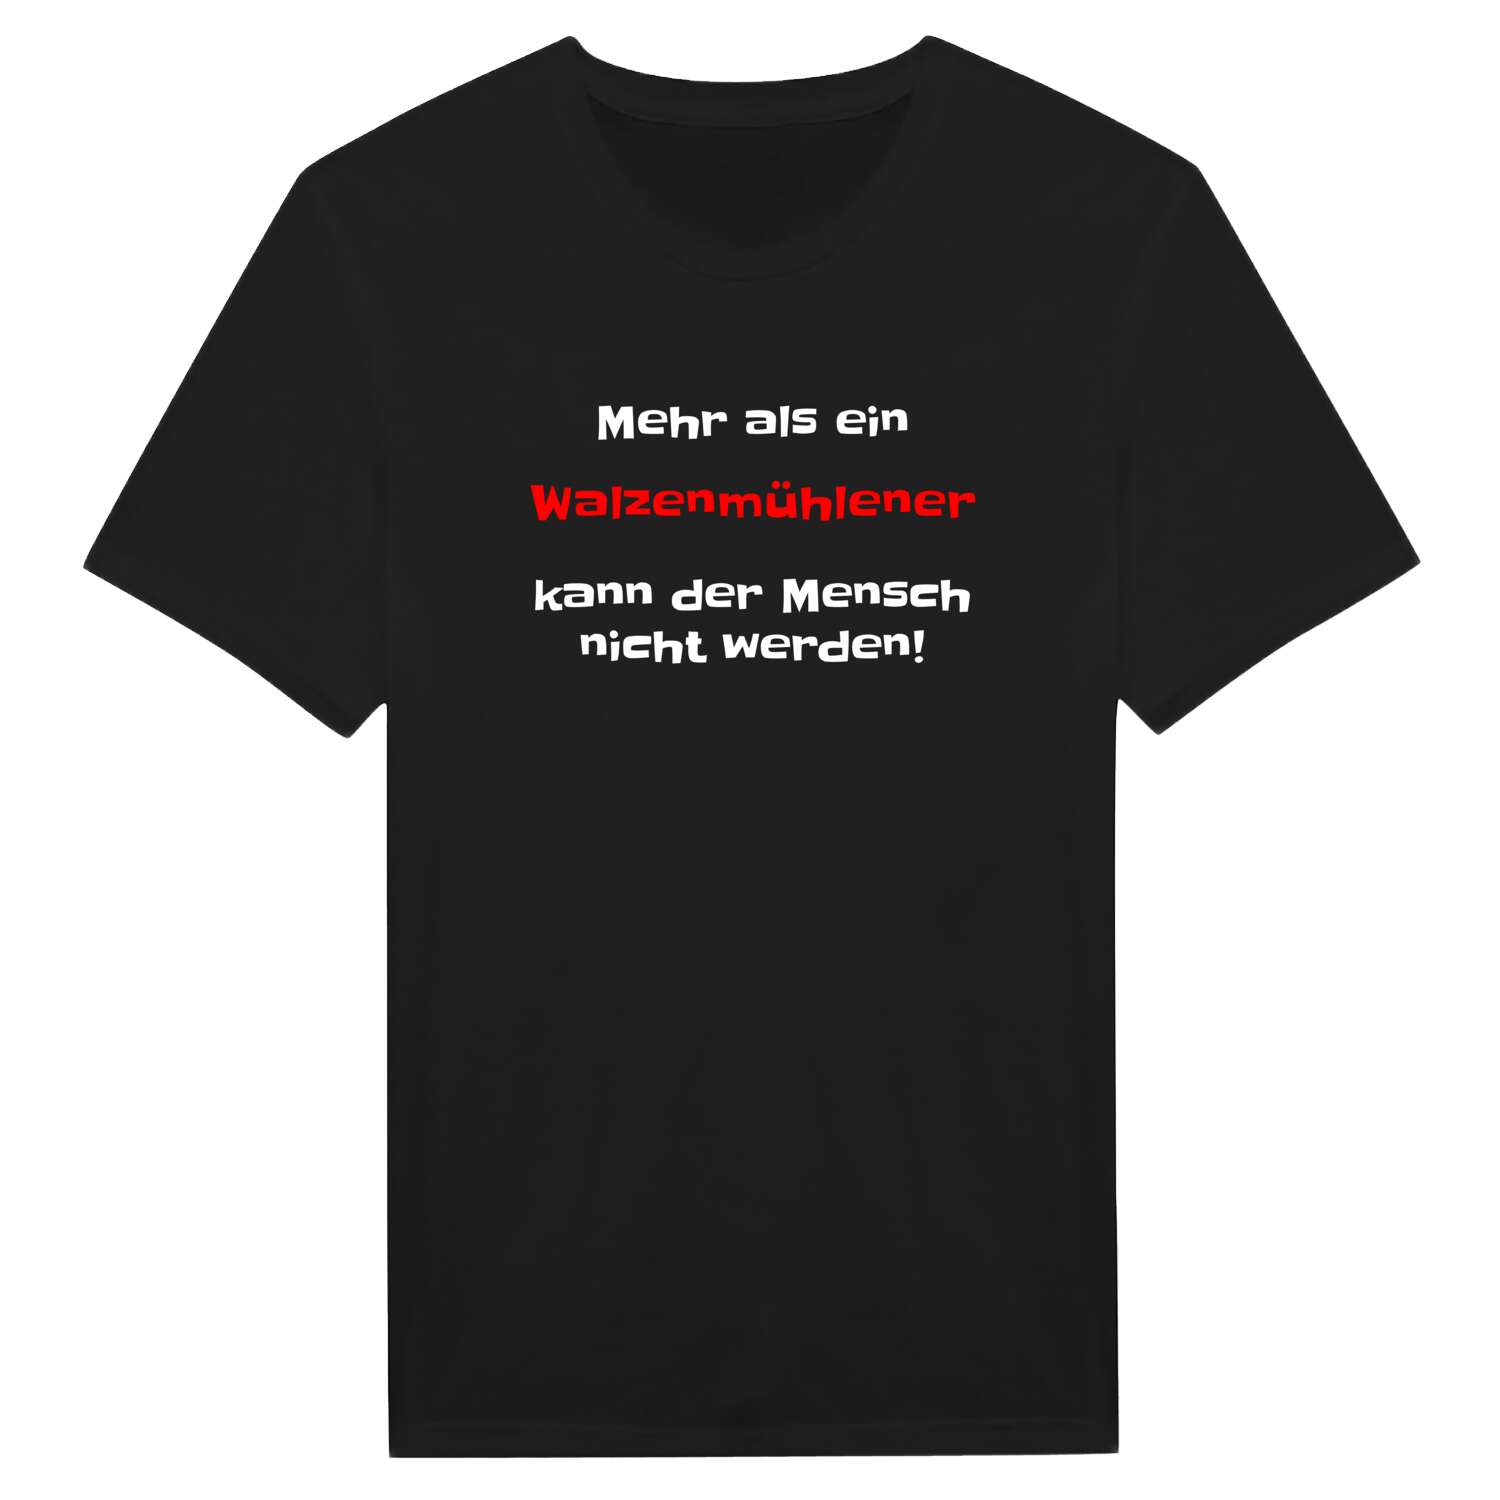 Walzenmühle T-Shirt »Mehr als ein«